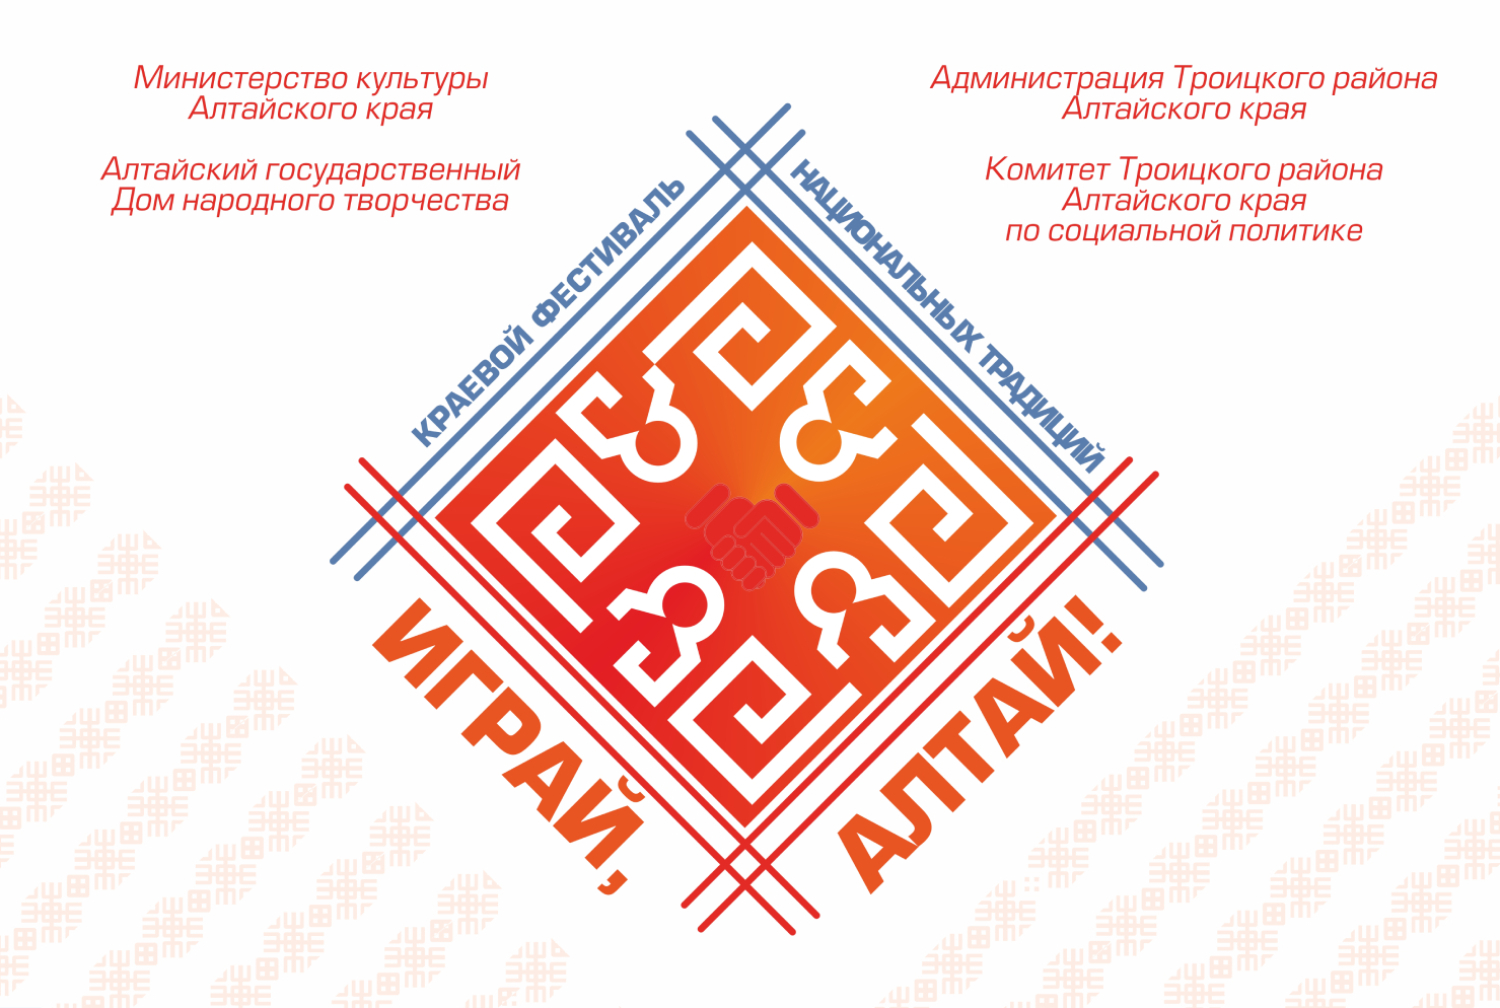 Закончен приём заявок на участие в краевом фестивале национальных традиций «Играй, Алтай!»